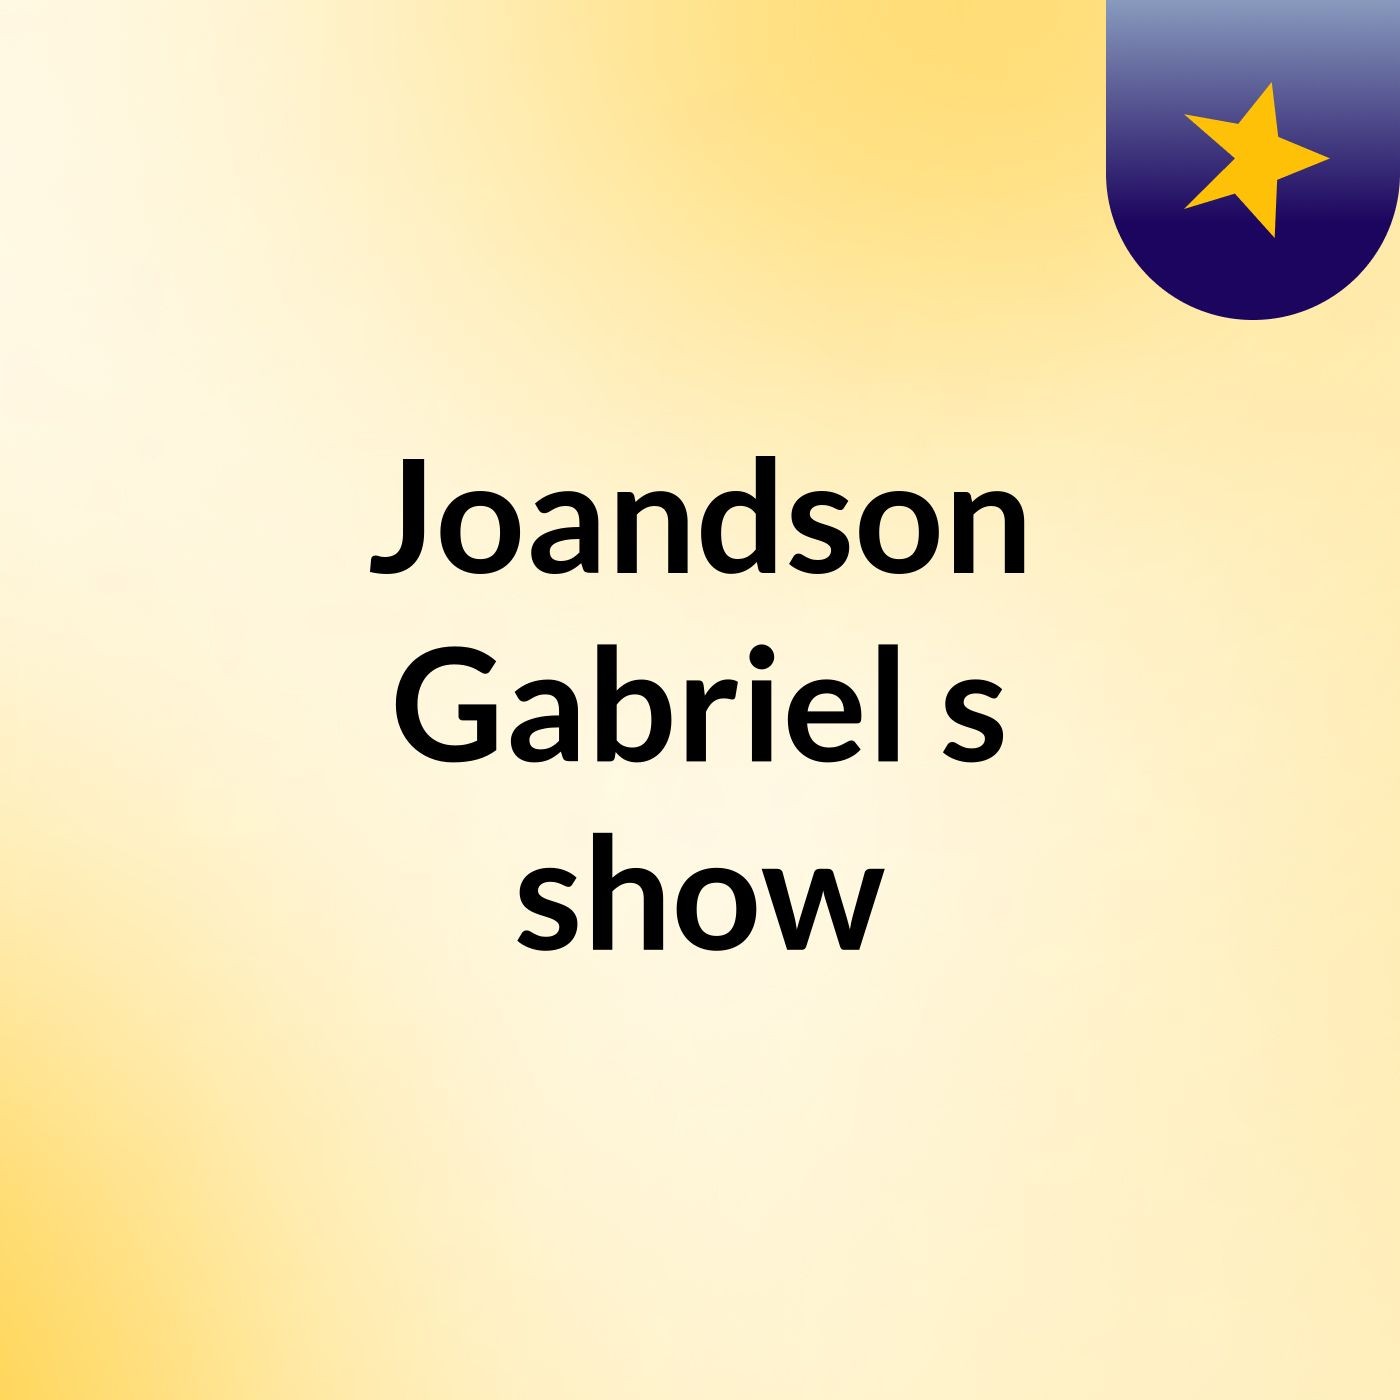 Joandson Gabriel's show